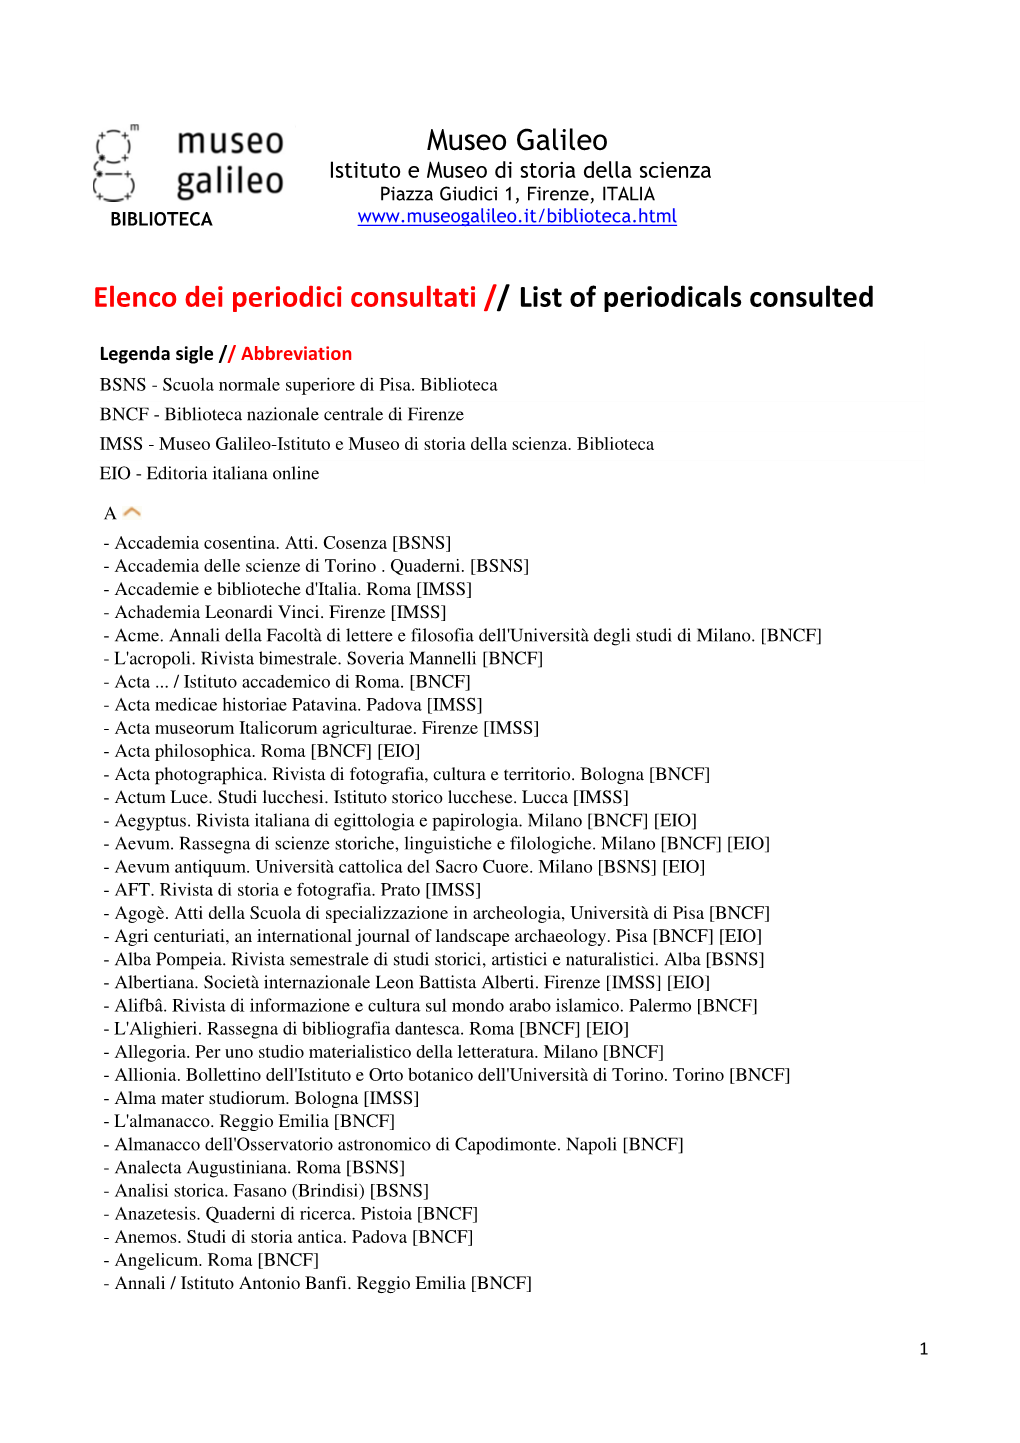 Periodici Consultati // List of Periodicals Consulted